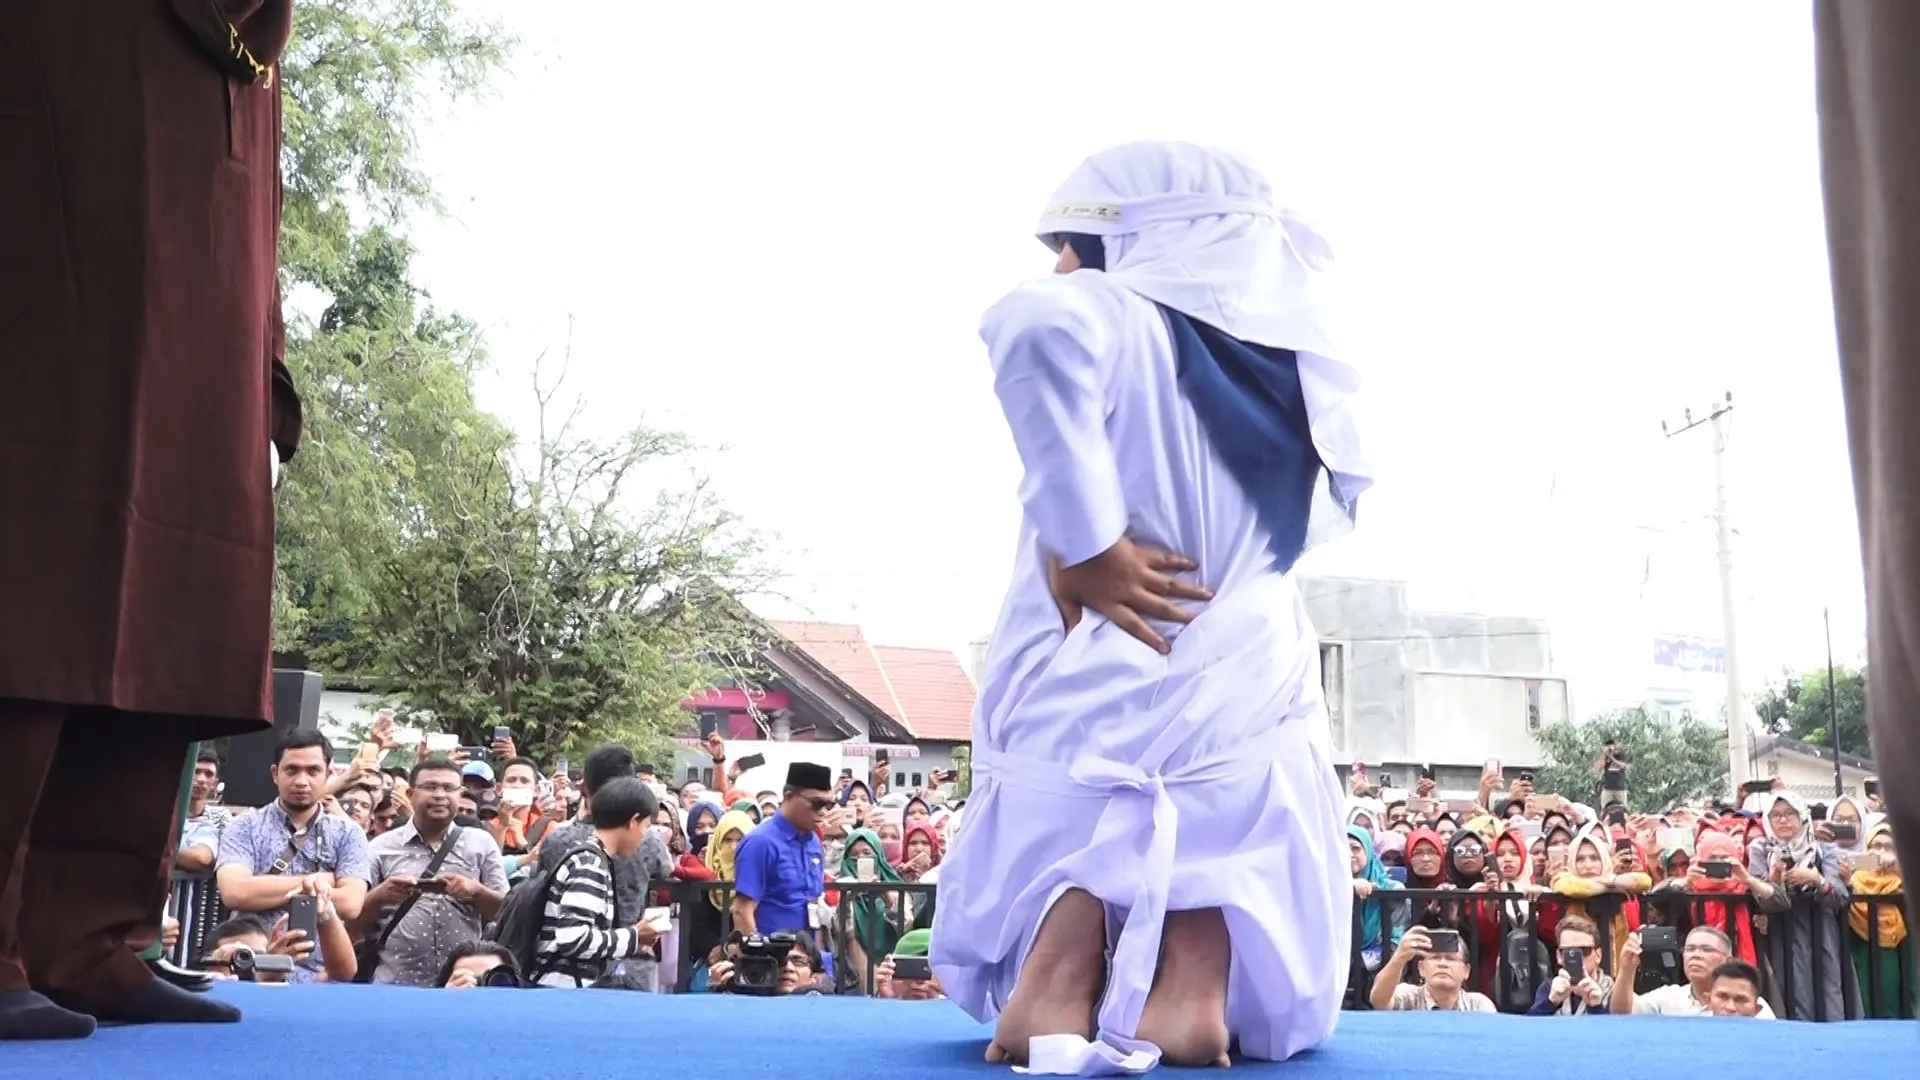 Hukuman cambuk yang dijalani dua PSK online merupakan eksekusi pertama setelah Gubernur Aceh mengeluarkan aturan pelaksanaan hukuman cambuk di dalam penjara. (Liputan6.com/Windy Phagta)